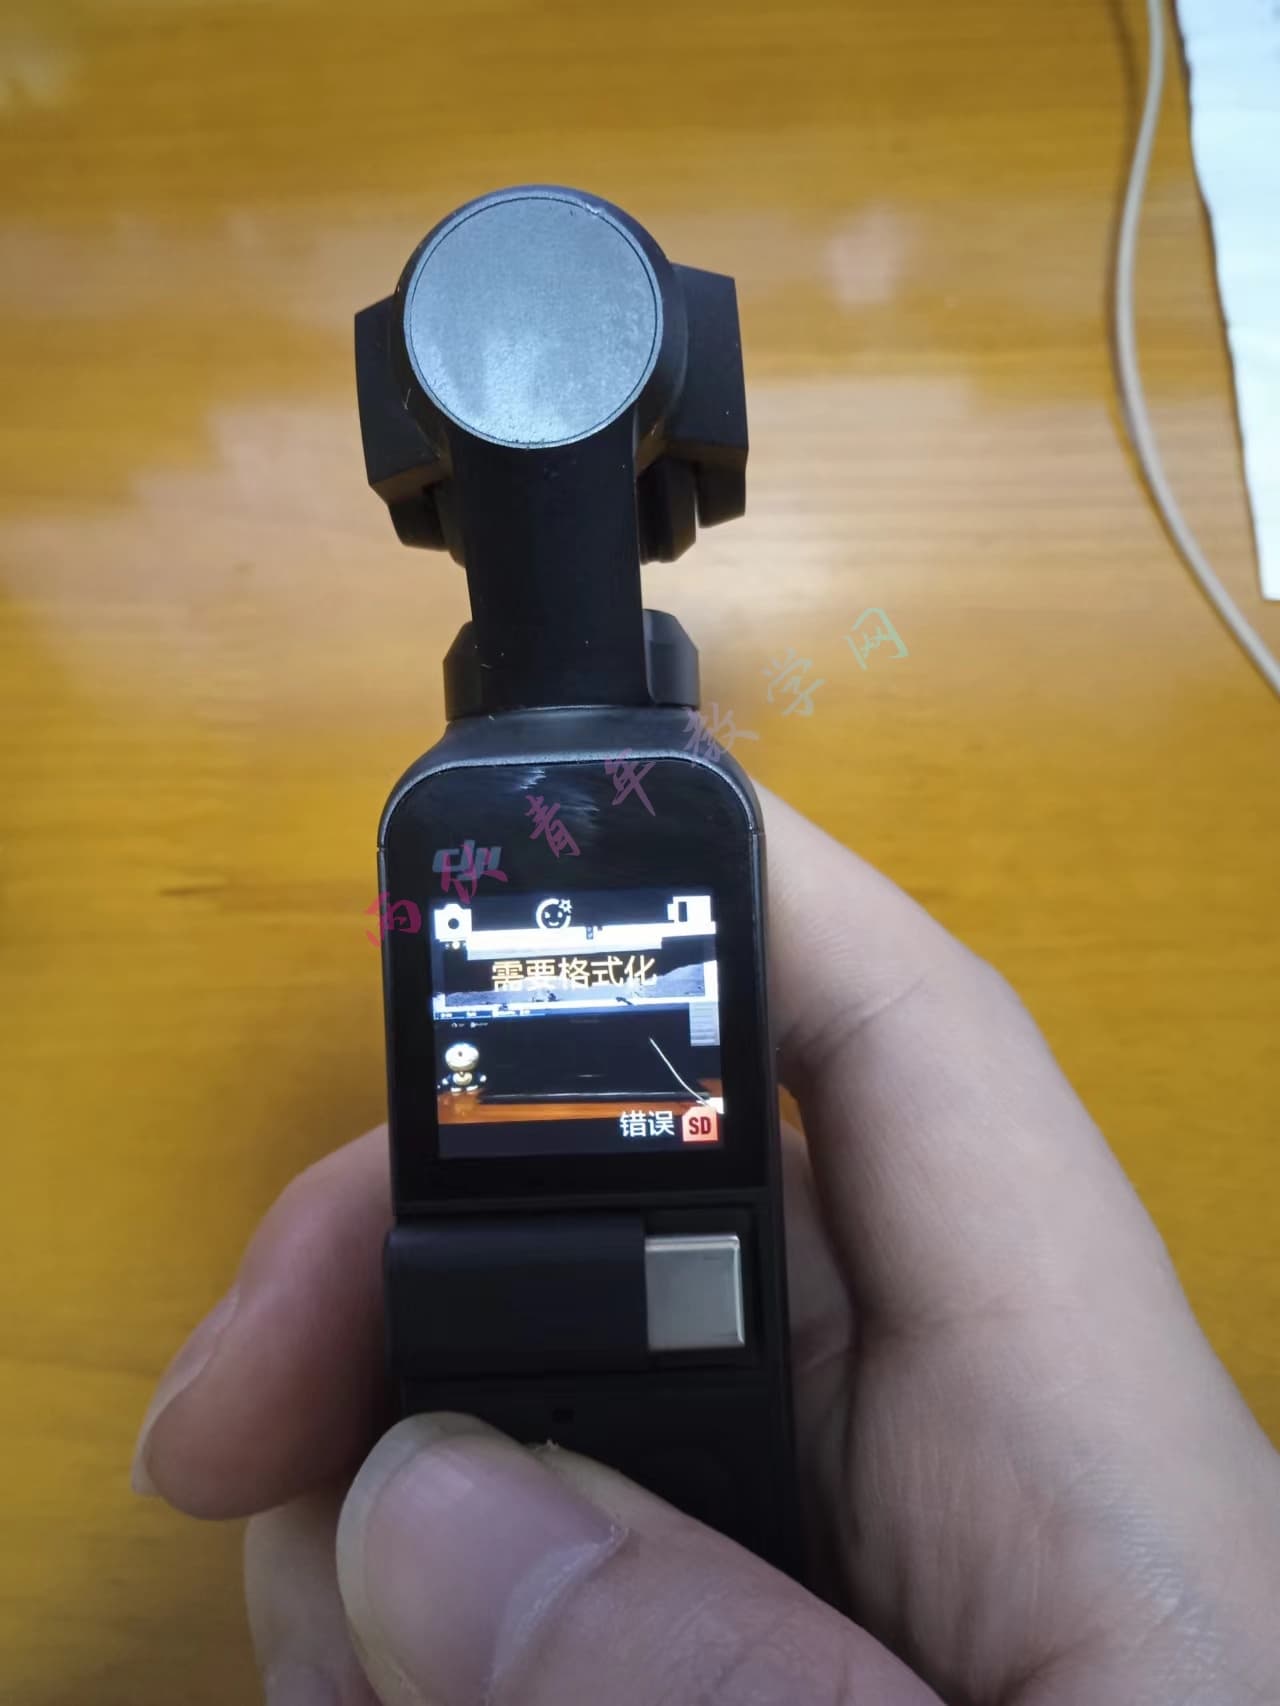 大疆pokect系列相机与其他视频设备格式化SD卡操作记录